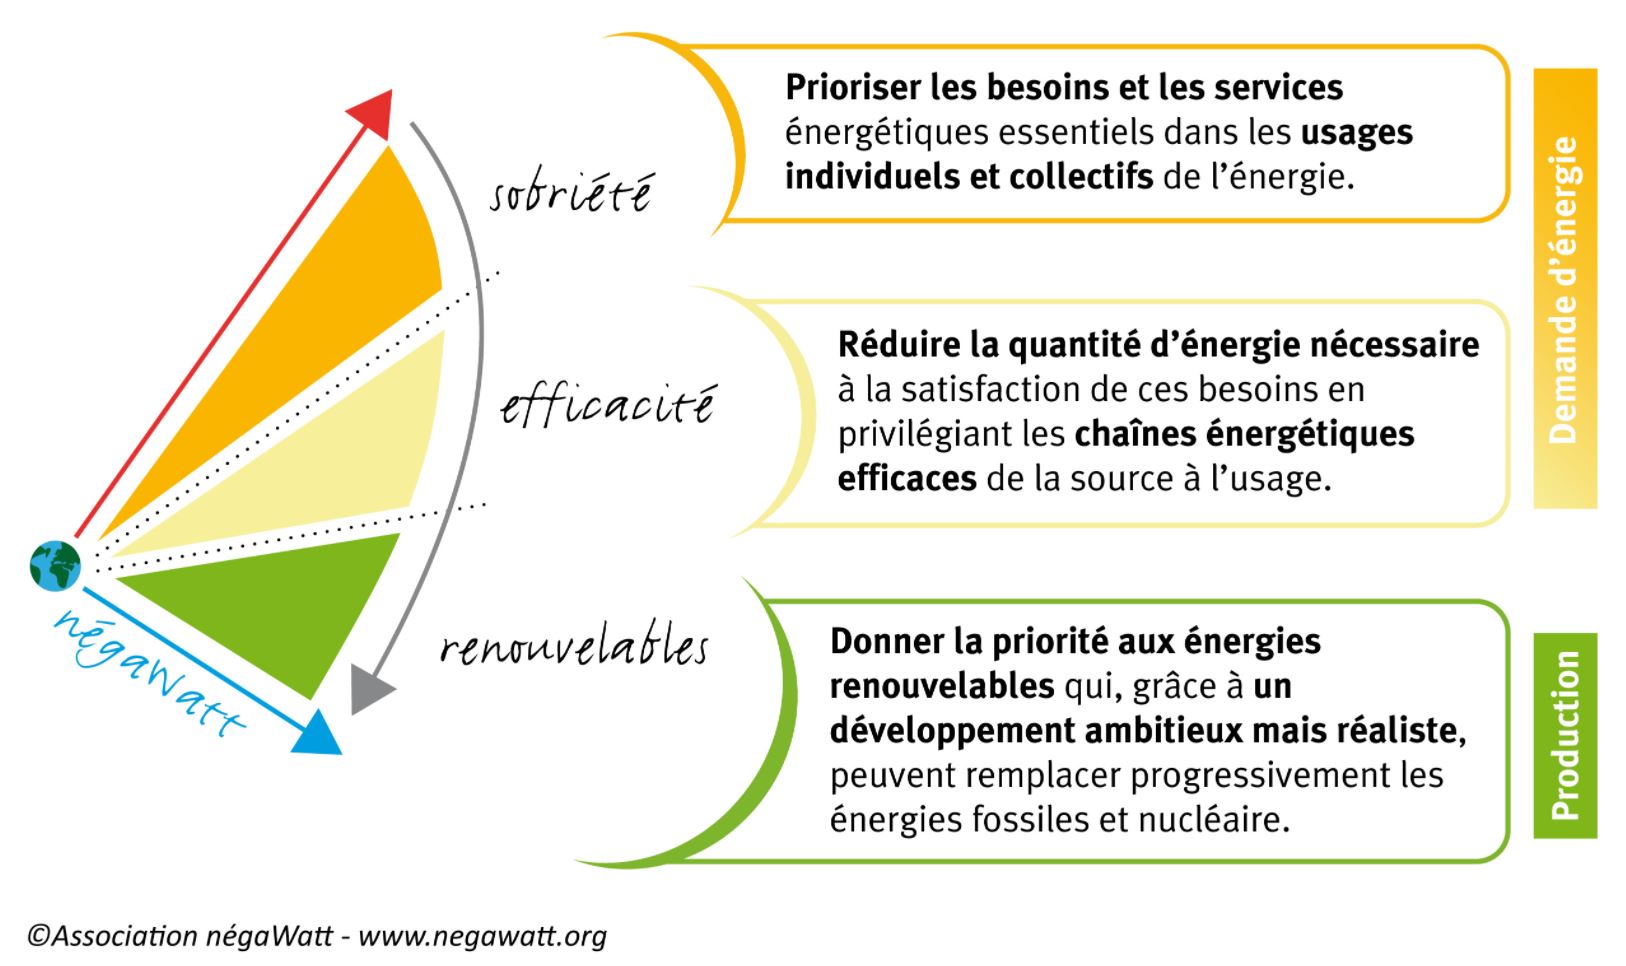 Ce schéma, issu du scénario Négawatt présente 3 moyens d'avancer vers la transition énergétique : la sobriété, l'efficacité de la consommation d'énergie, et l'utilisation d'énergies renouvelables